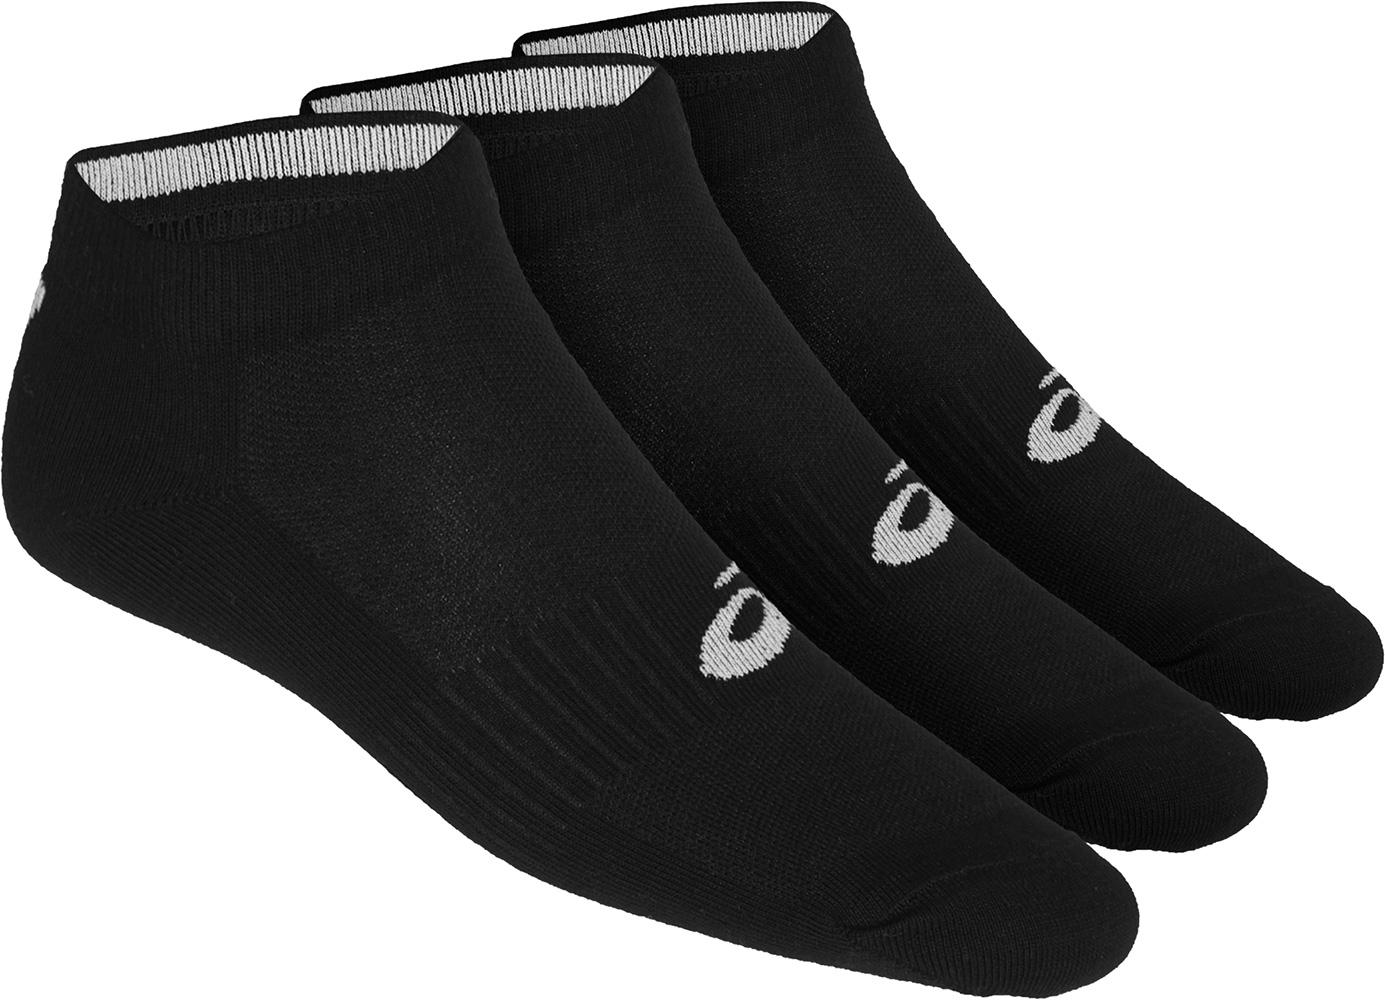 Asics 3ppk Ped Socks - Black